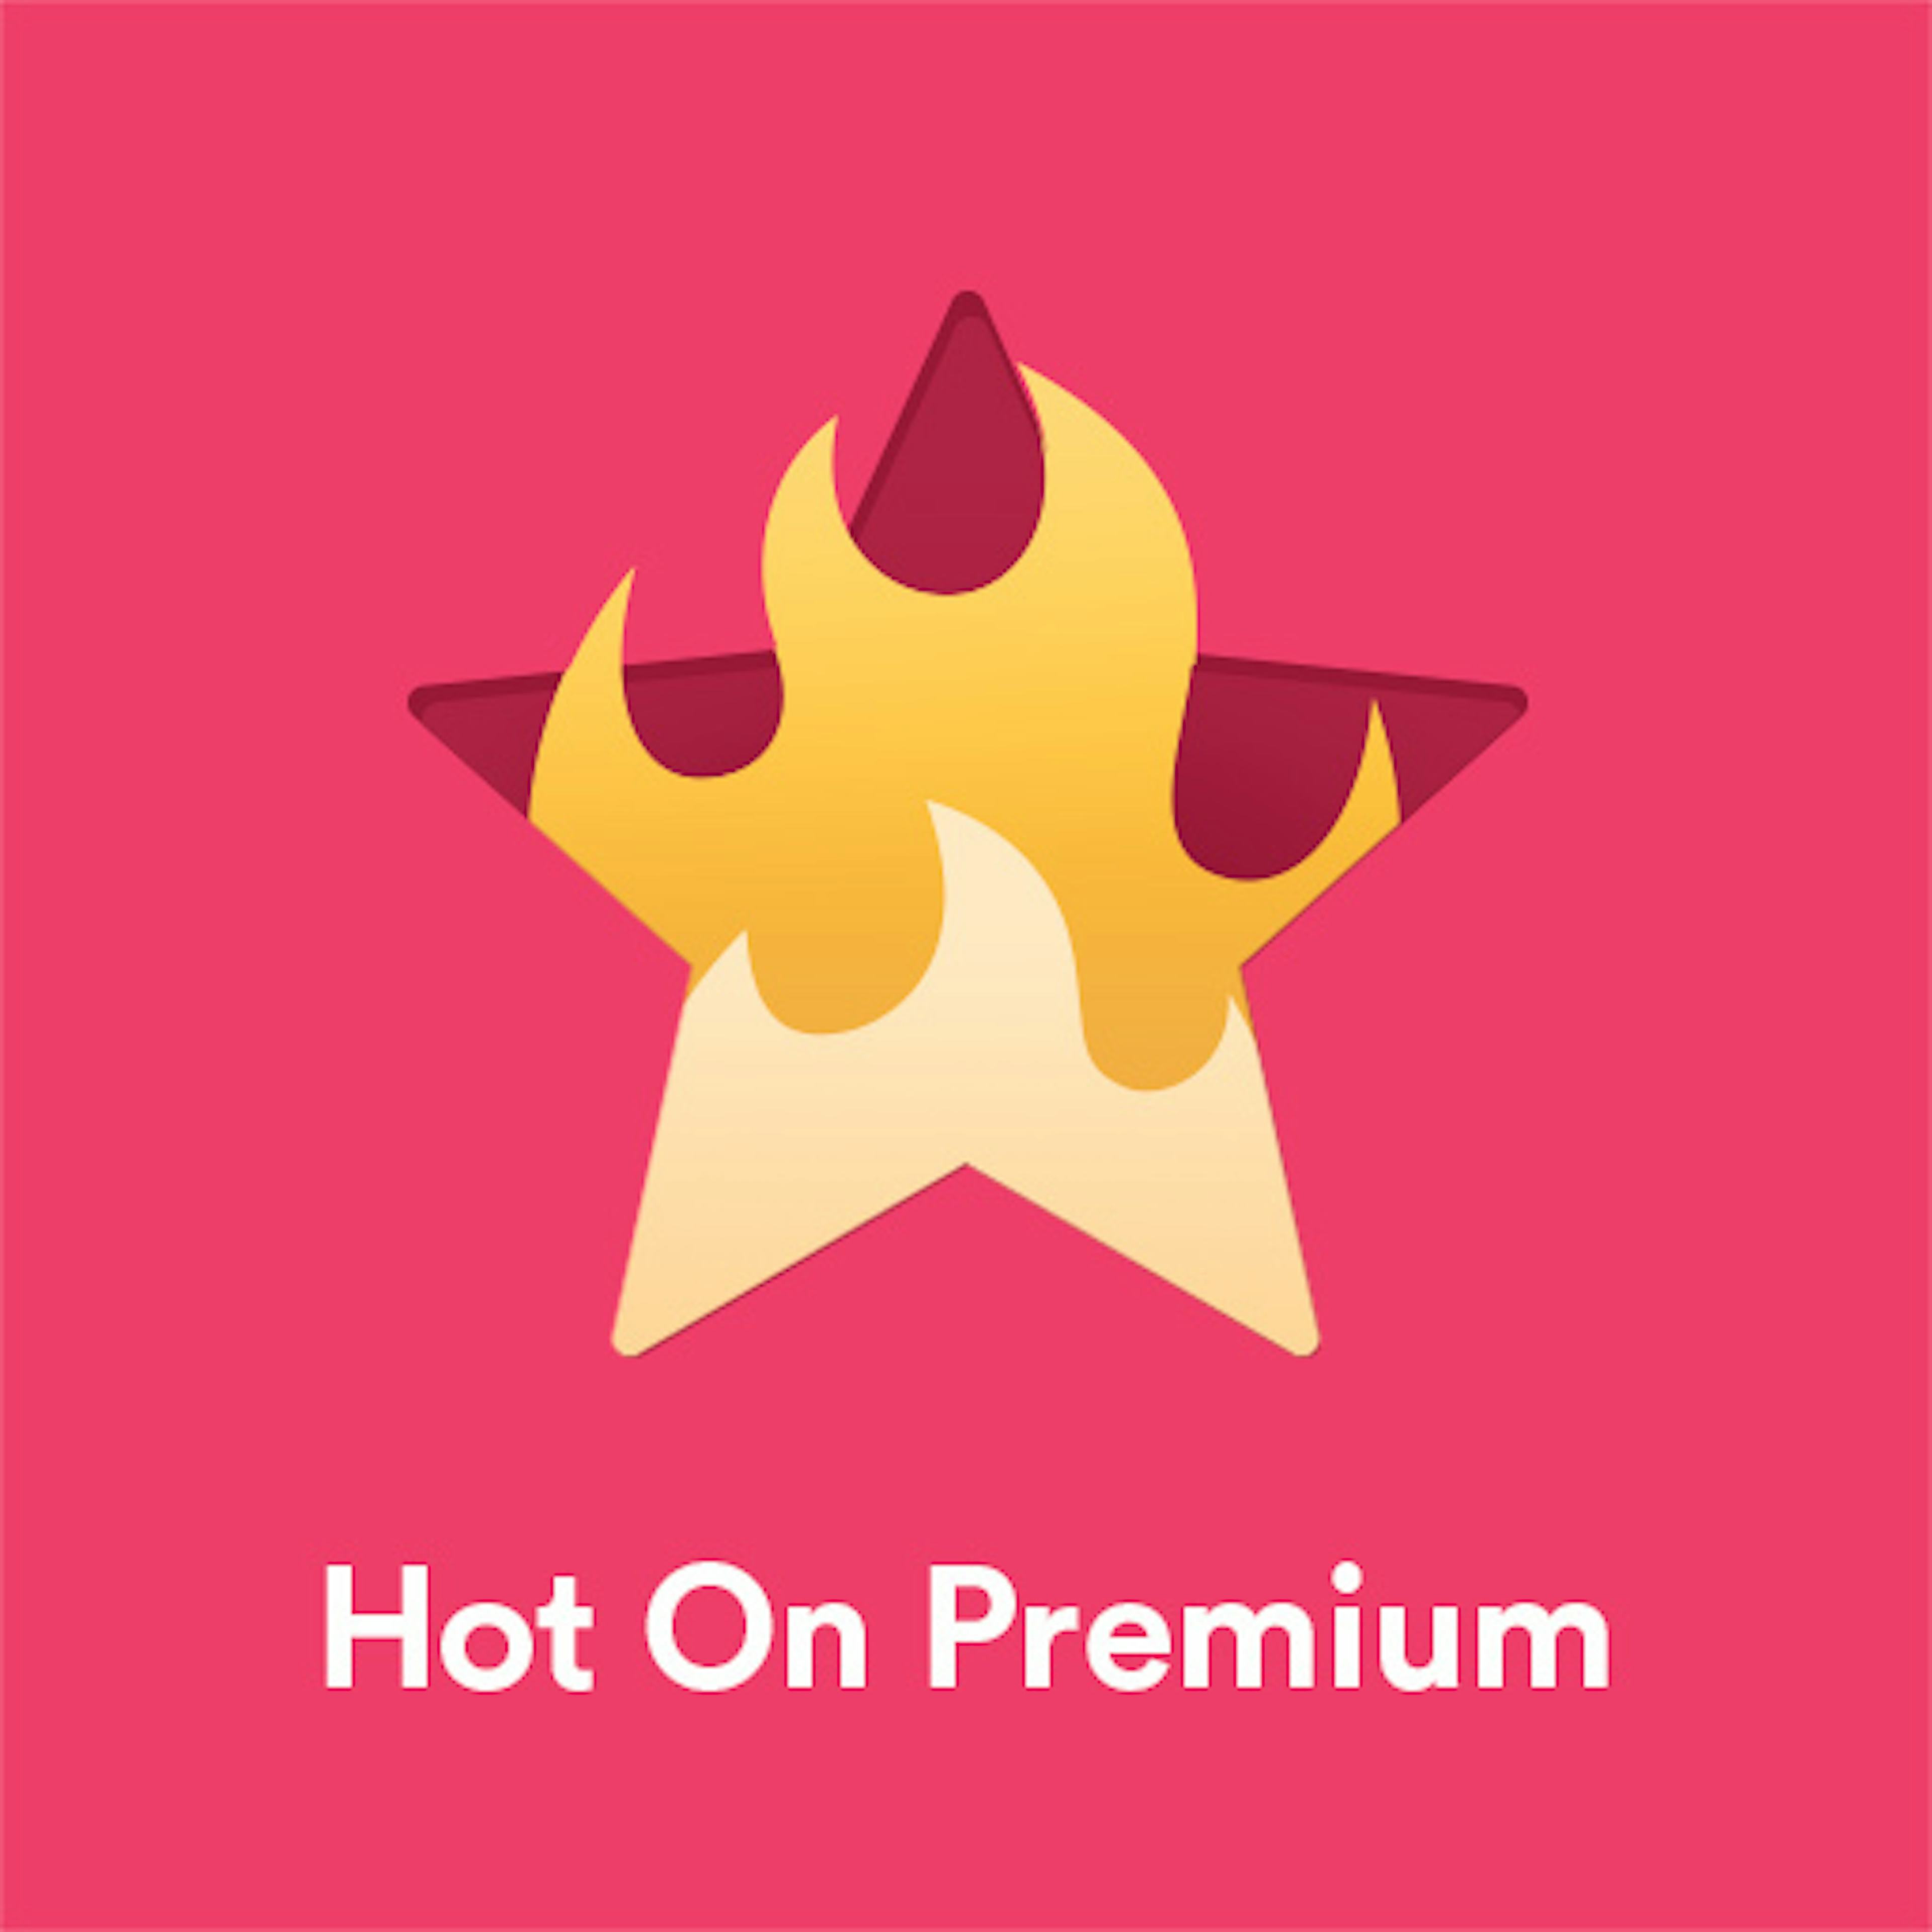 Hot On Premium artwork